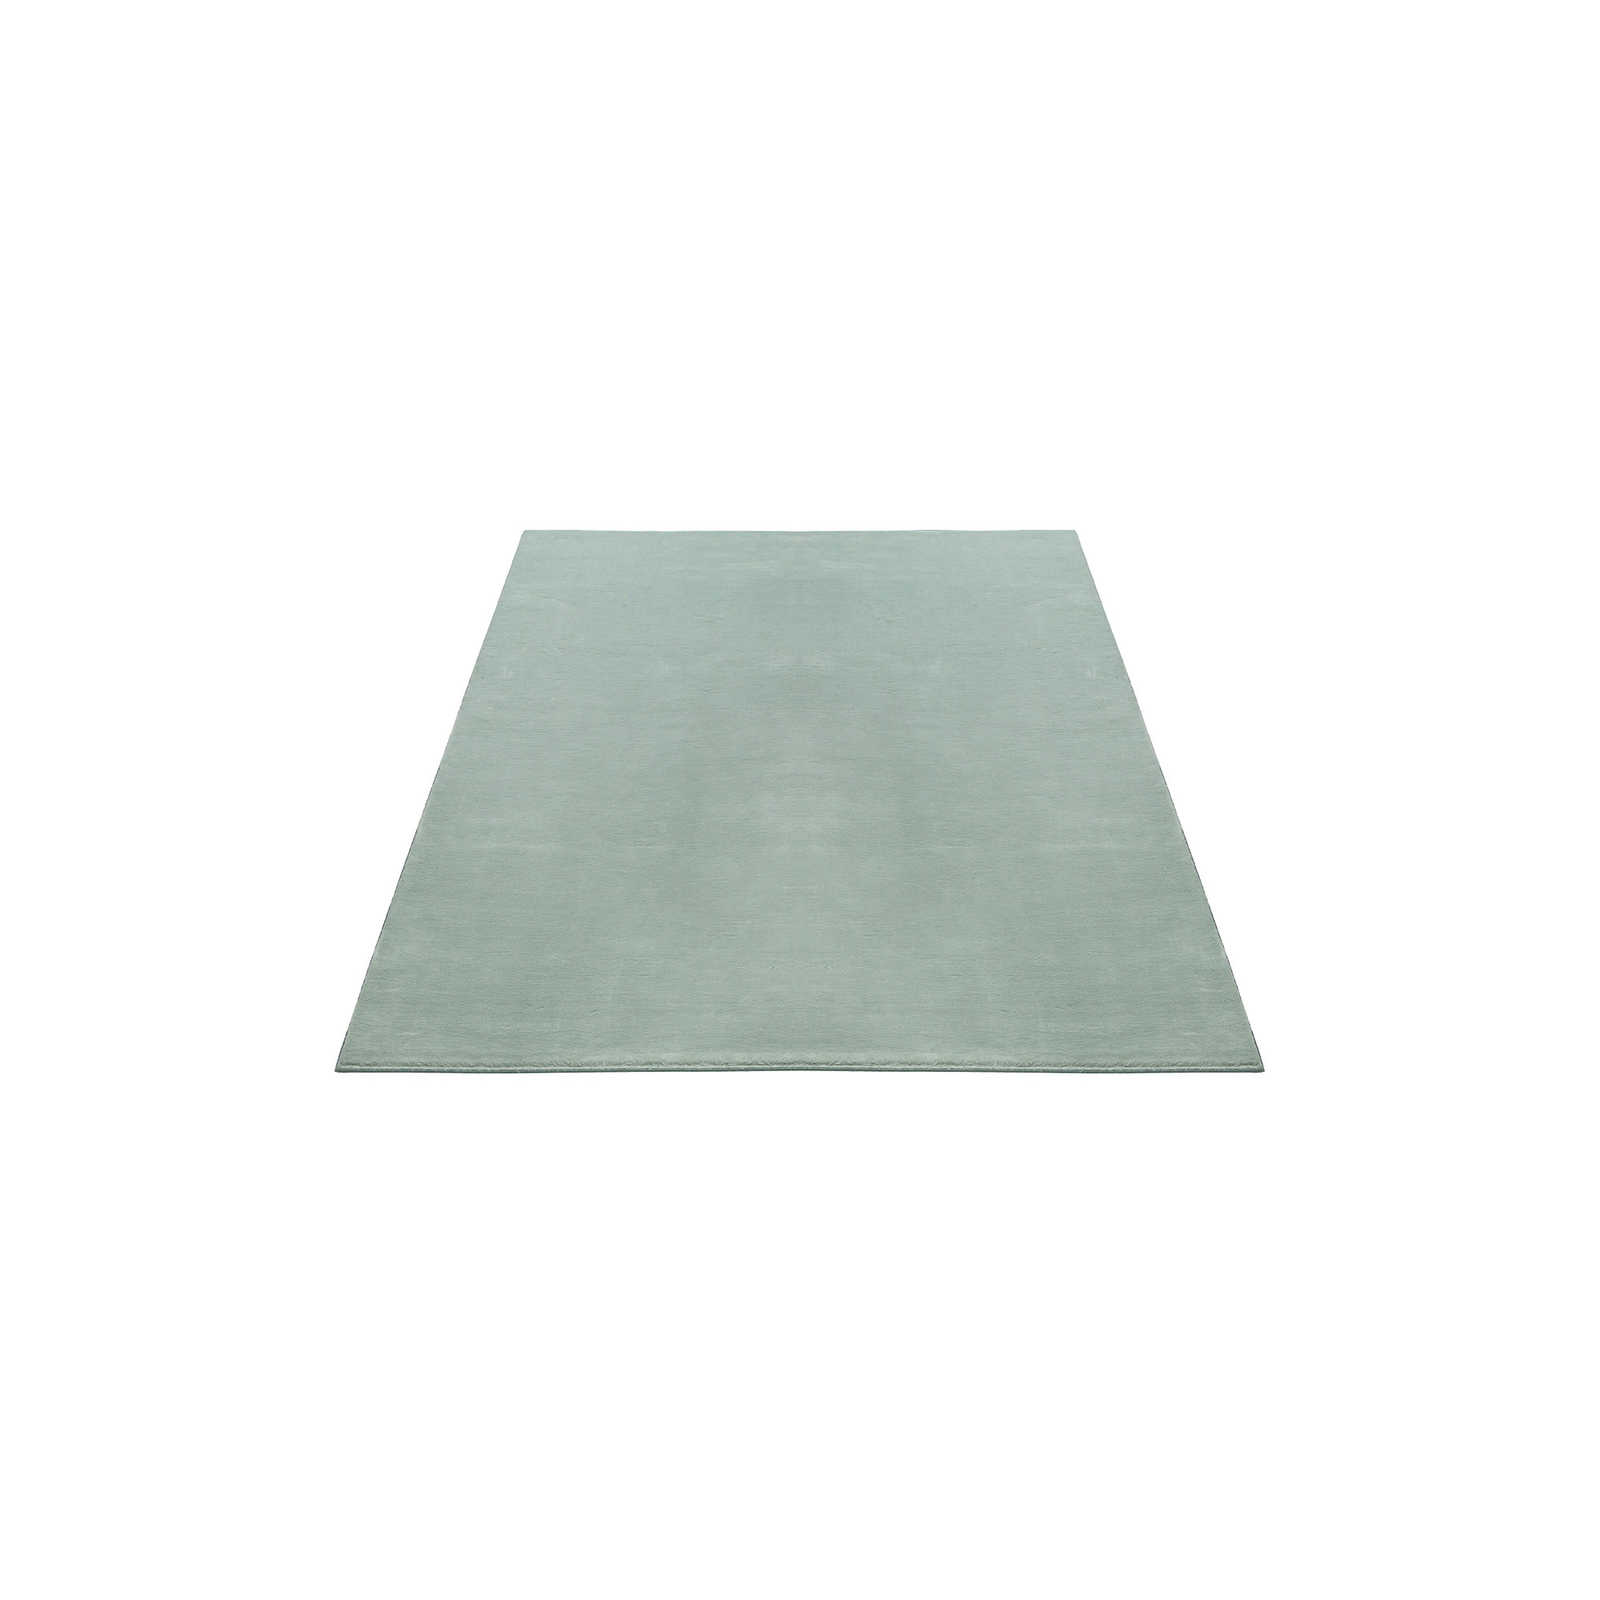 Weicher Hochflor Teppich in sanften Grün – 170 x 120 cm
